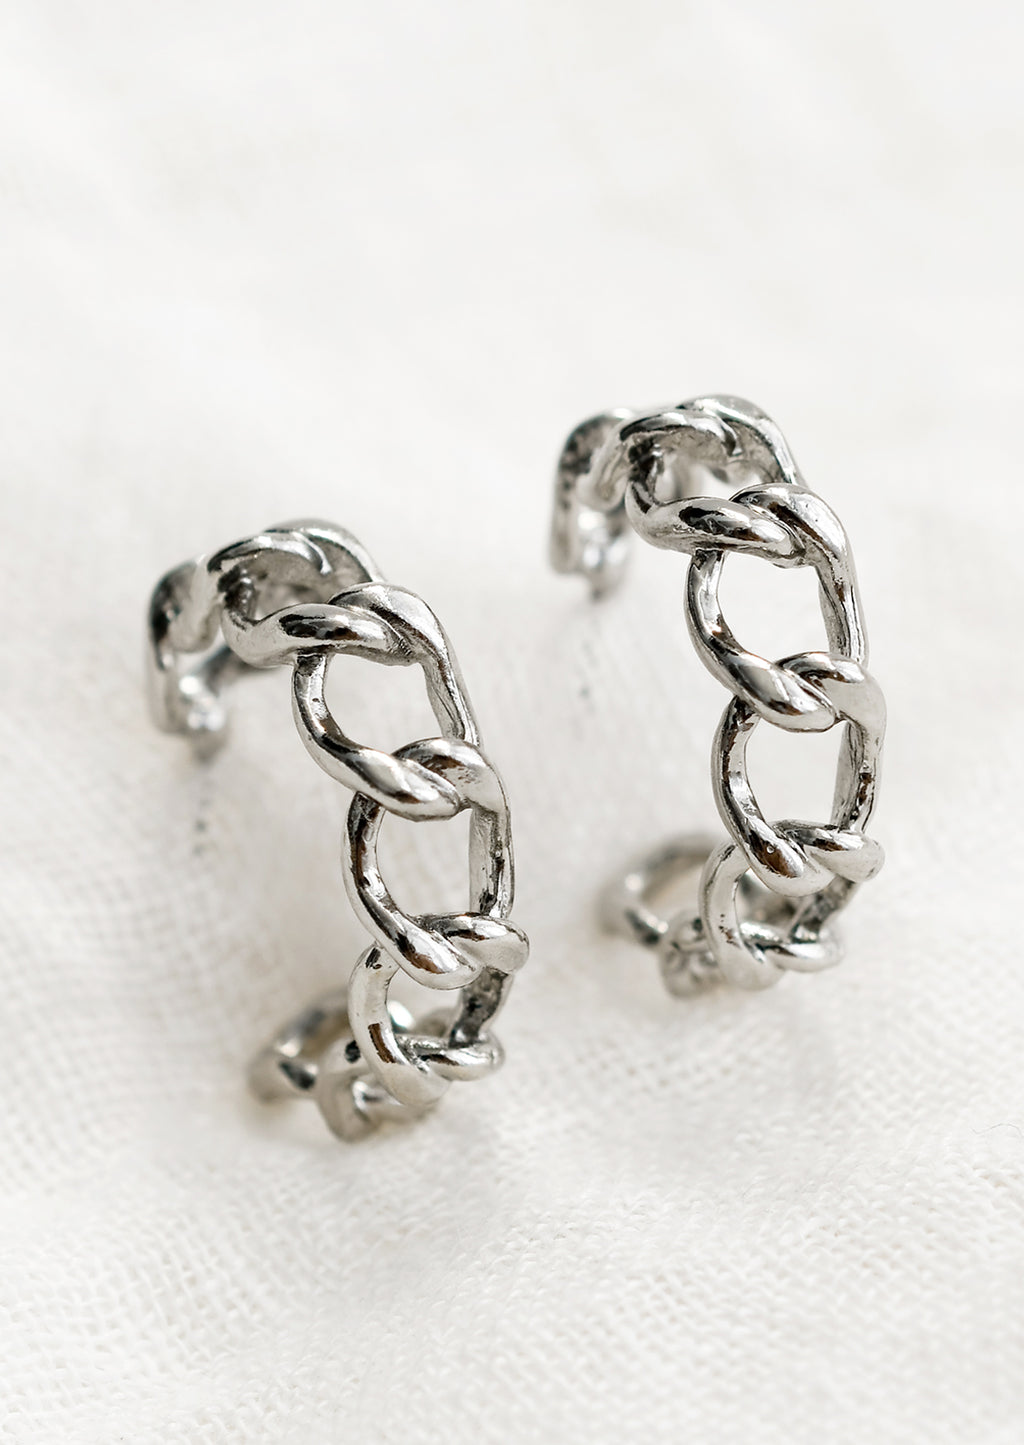 Silver: A pair of chainlink hoop earrings in silver.